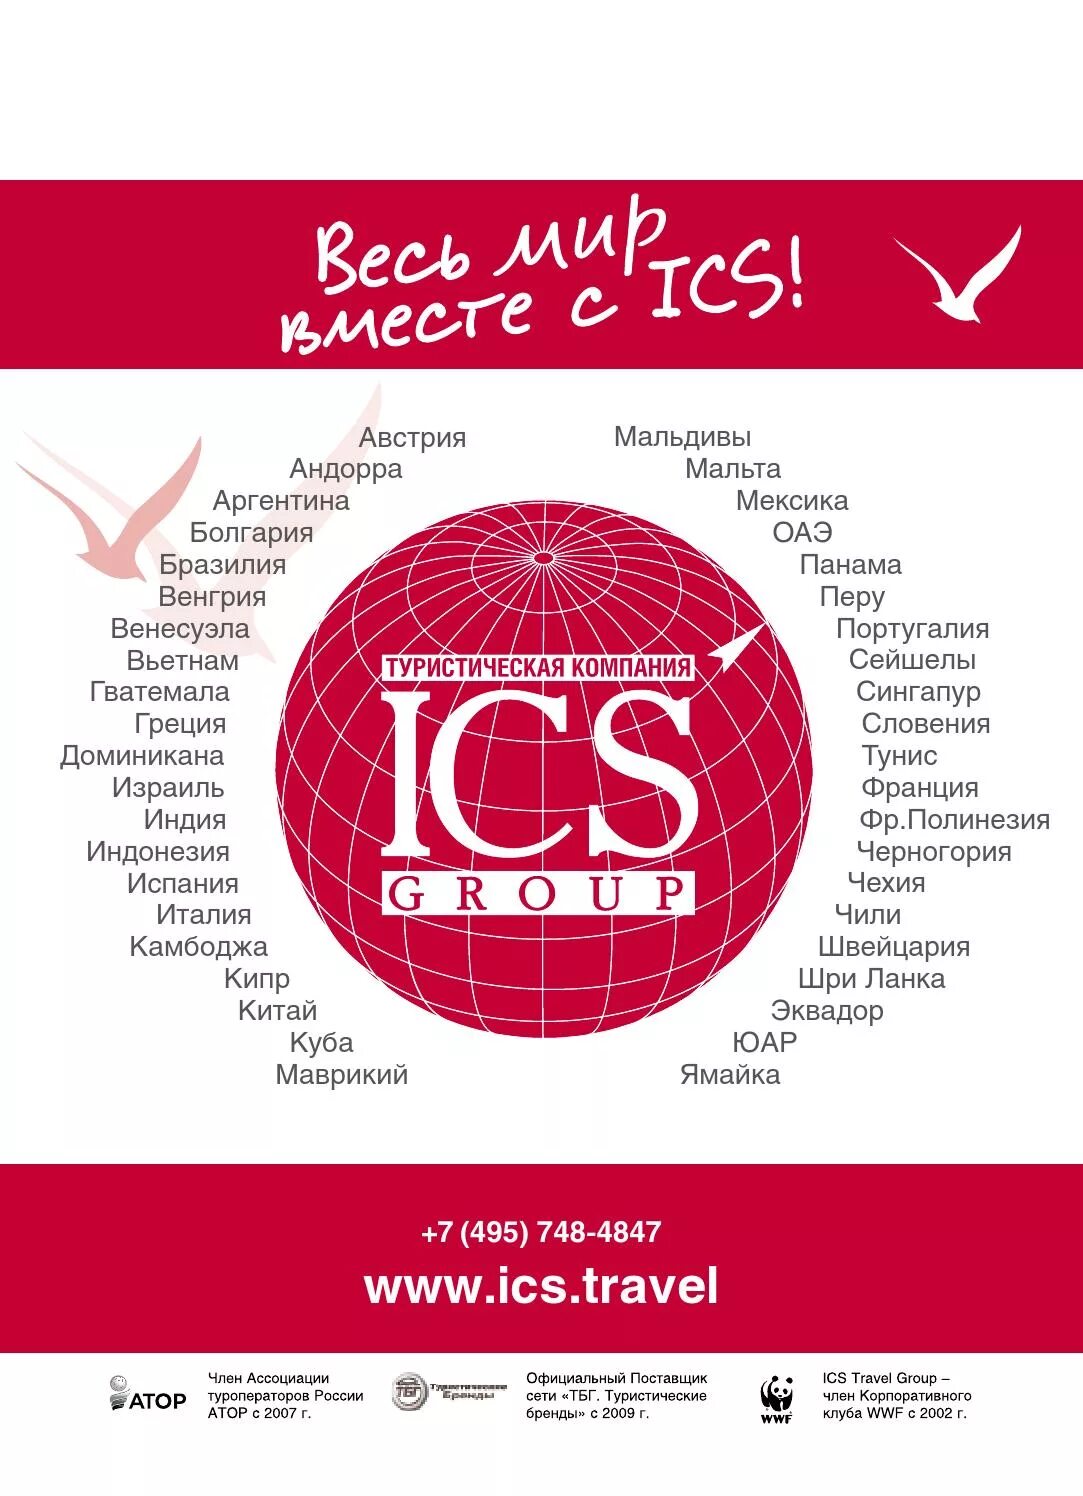 Си эс 3. ICS Group туроператор. Туроператор ICS Travel. ICS Travel Group реклама. ICS туроператор логотип.